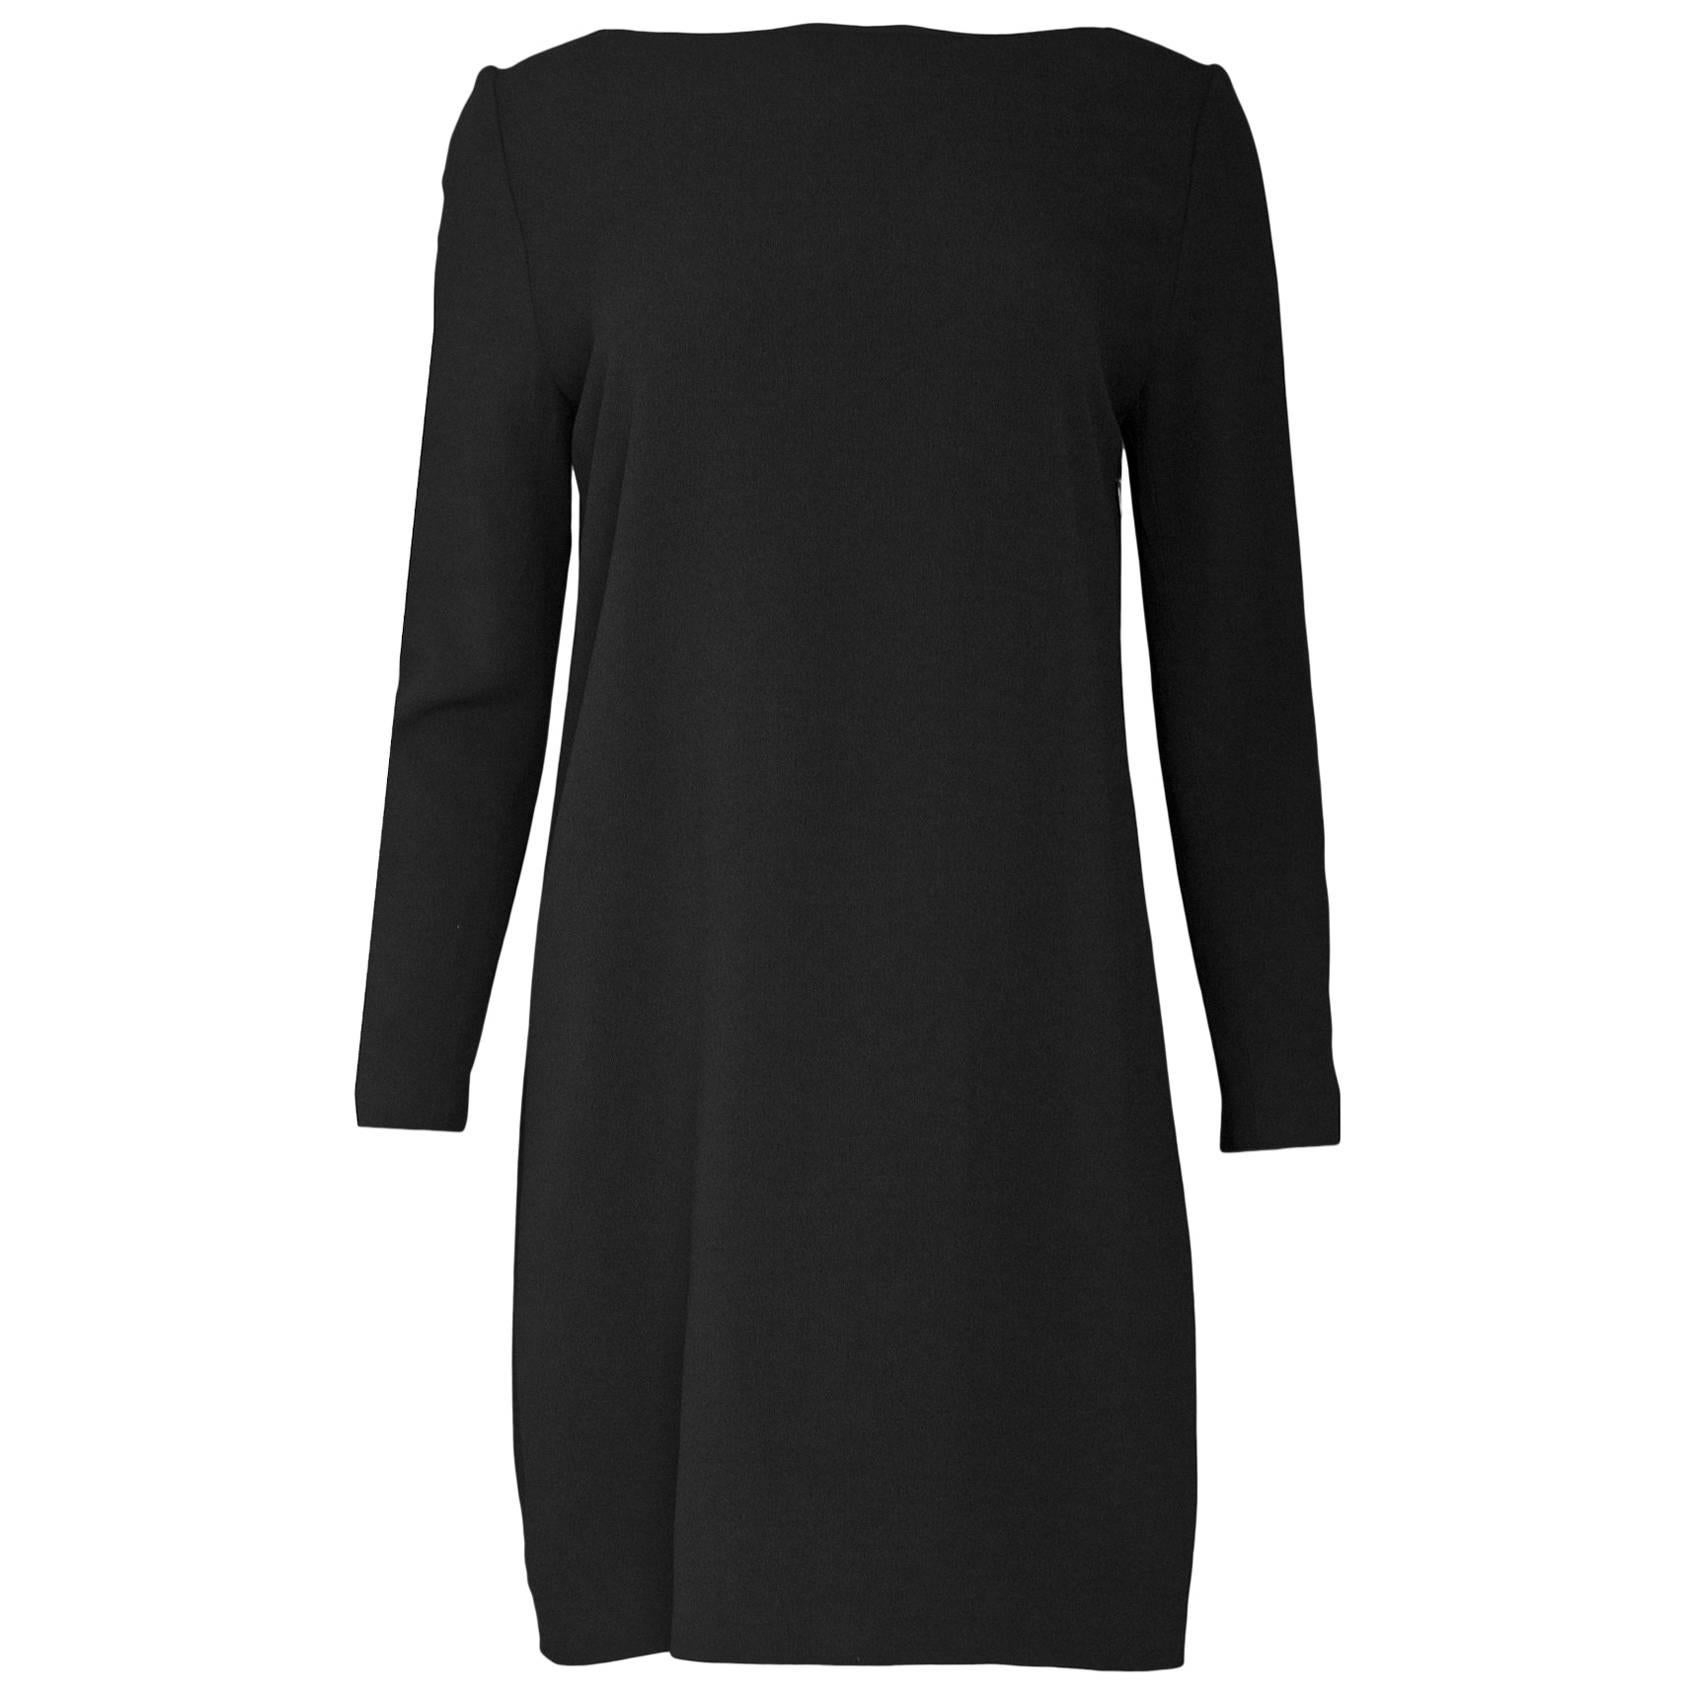 Saint Laurent Black Lace Dress Sz FR40 NWT